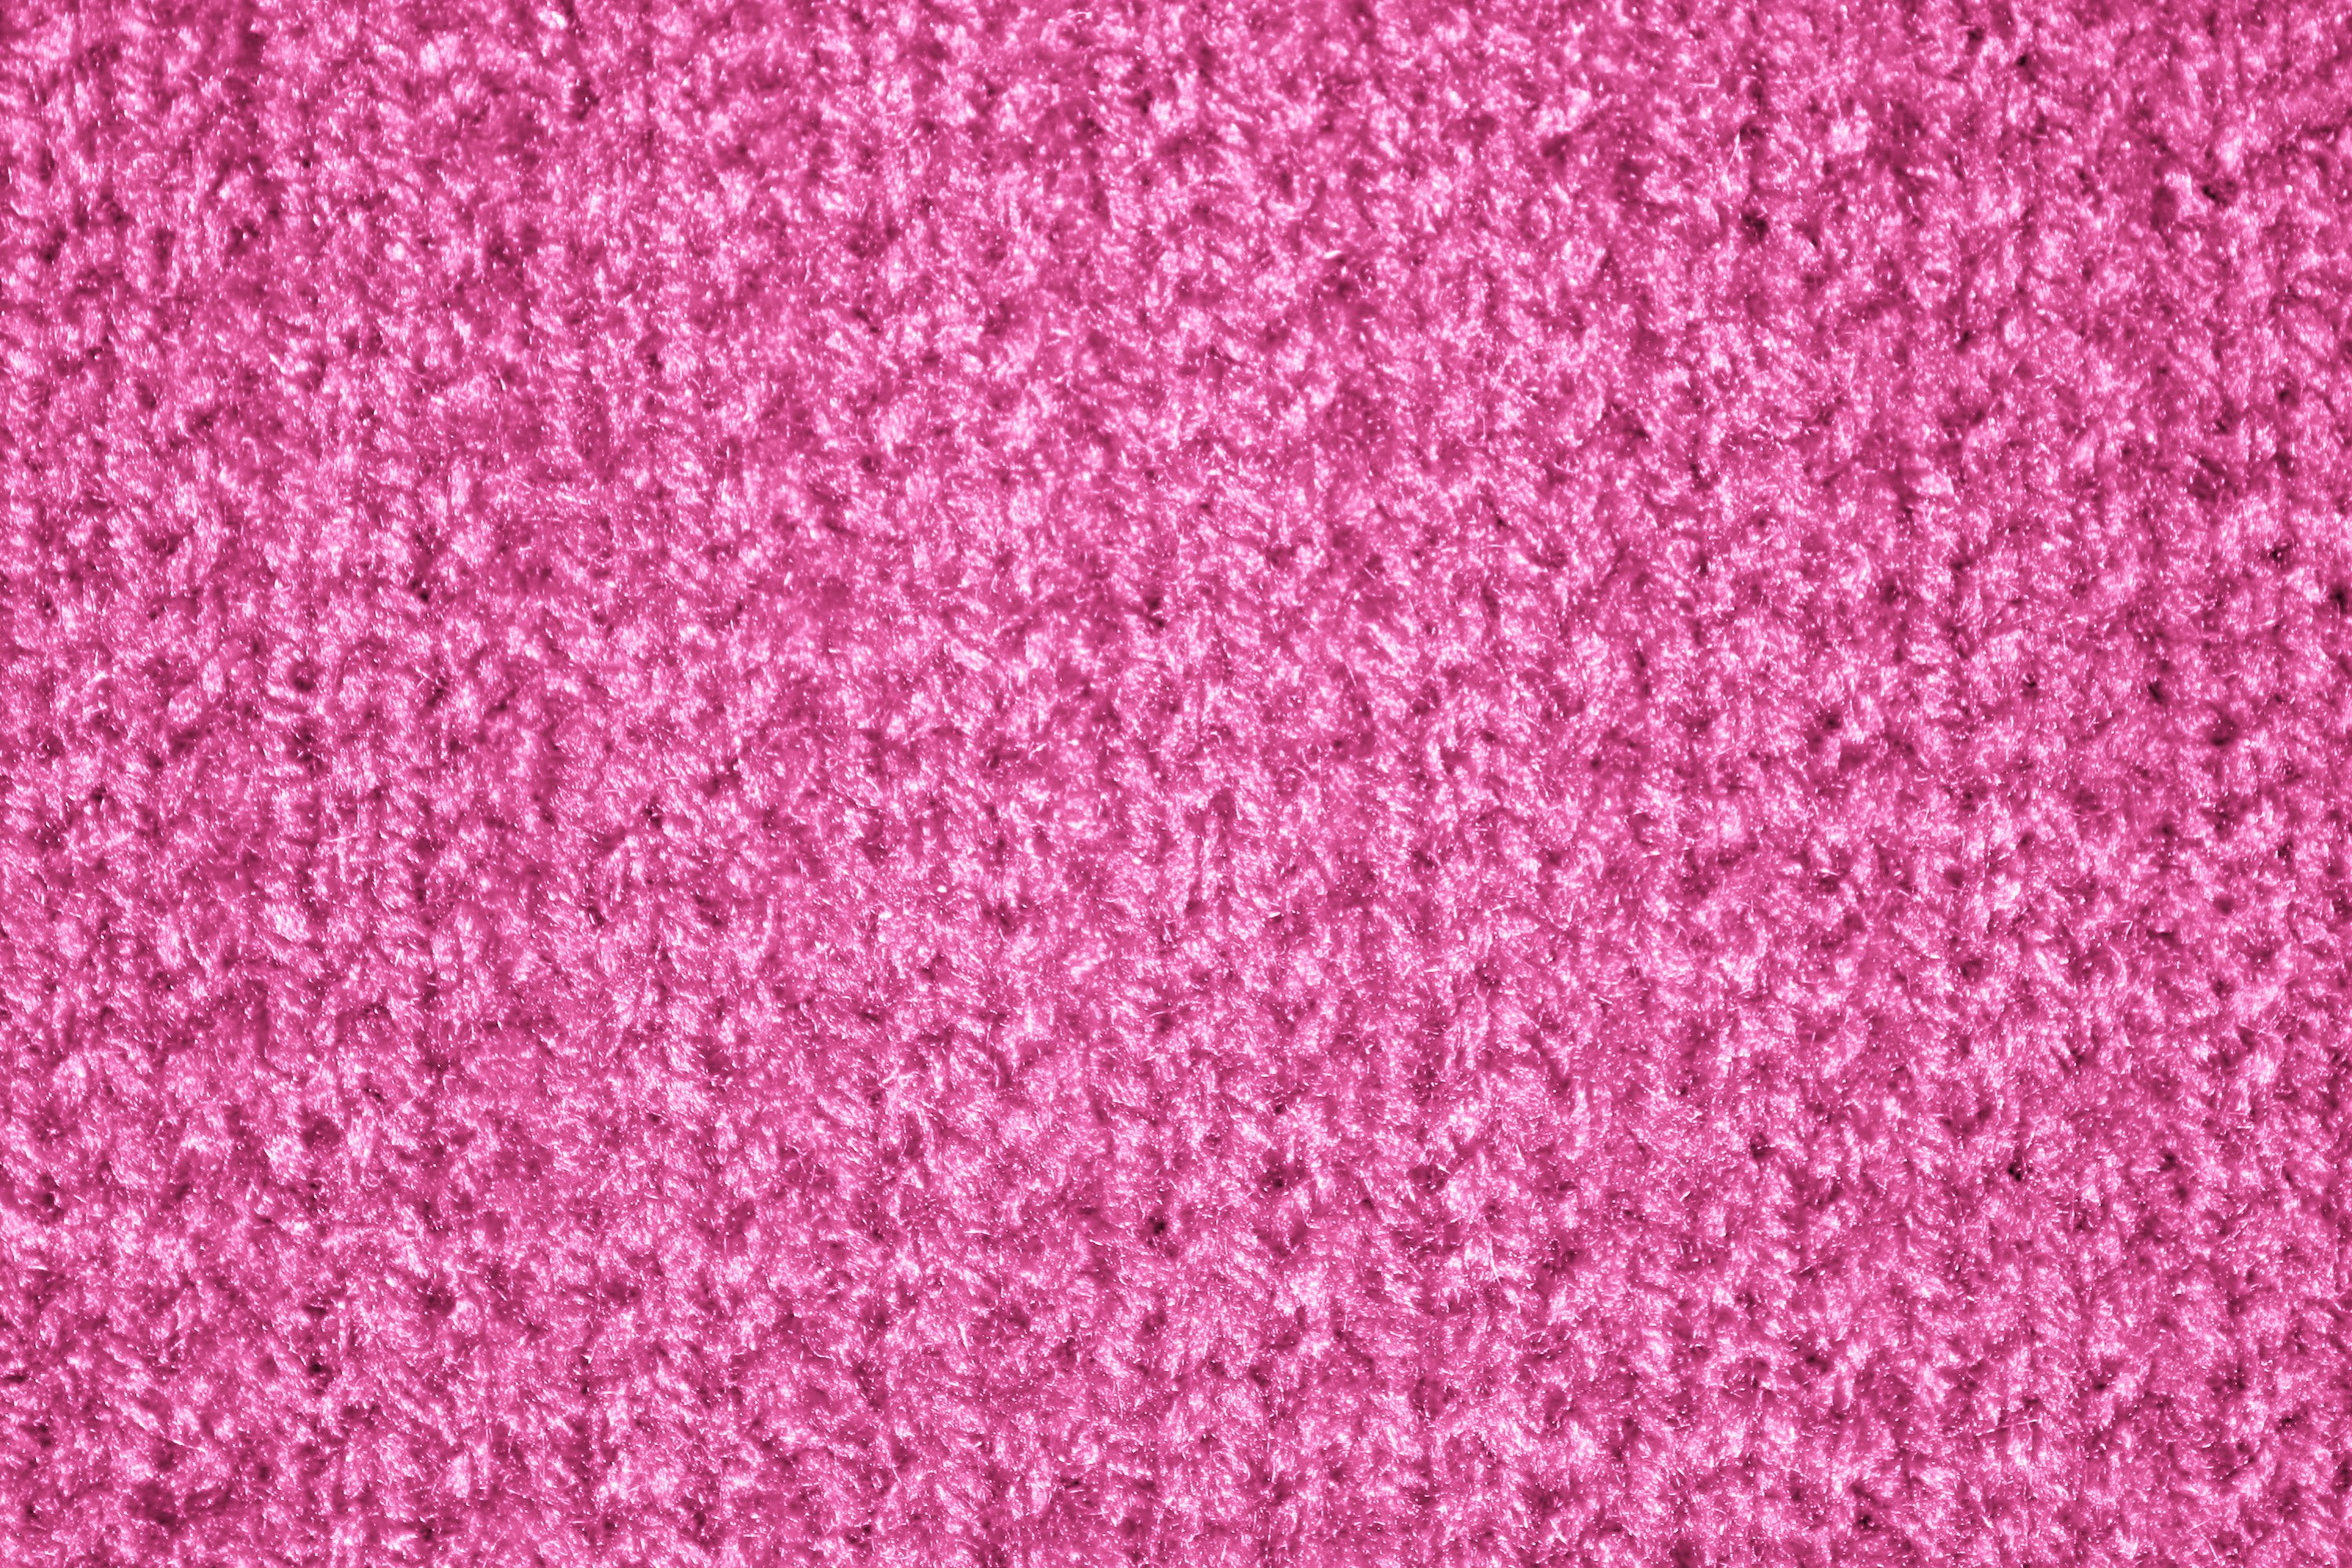 Pink Knit Texture Picture Free Photograph Photos Public Domain Images, Photos, Reviews